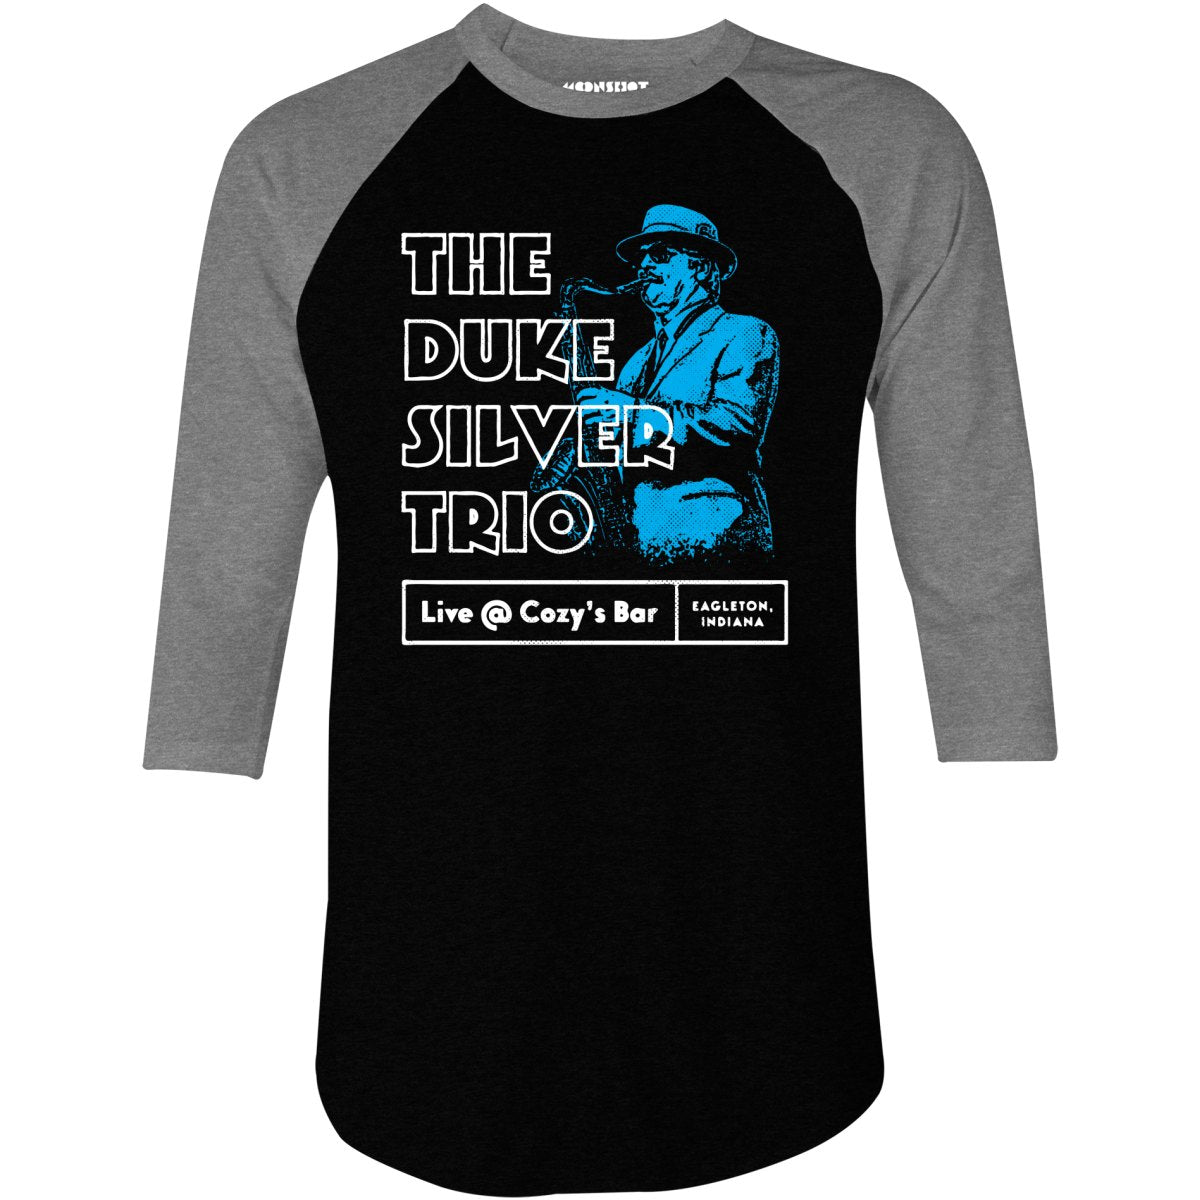 The Duke Silver Trio - 3/4 Sleeve Raglan T-Shirt